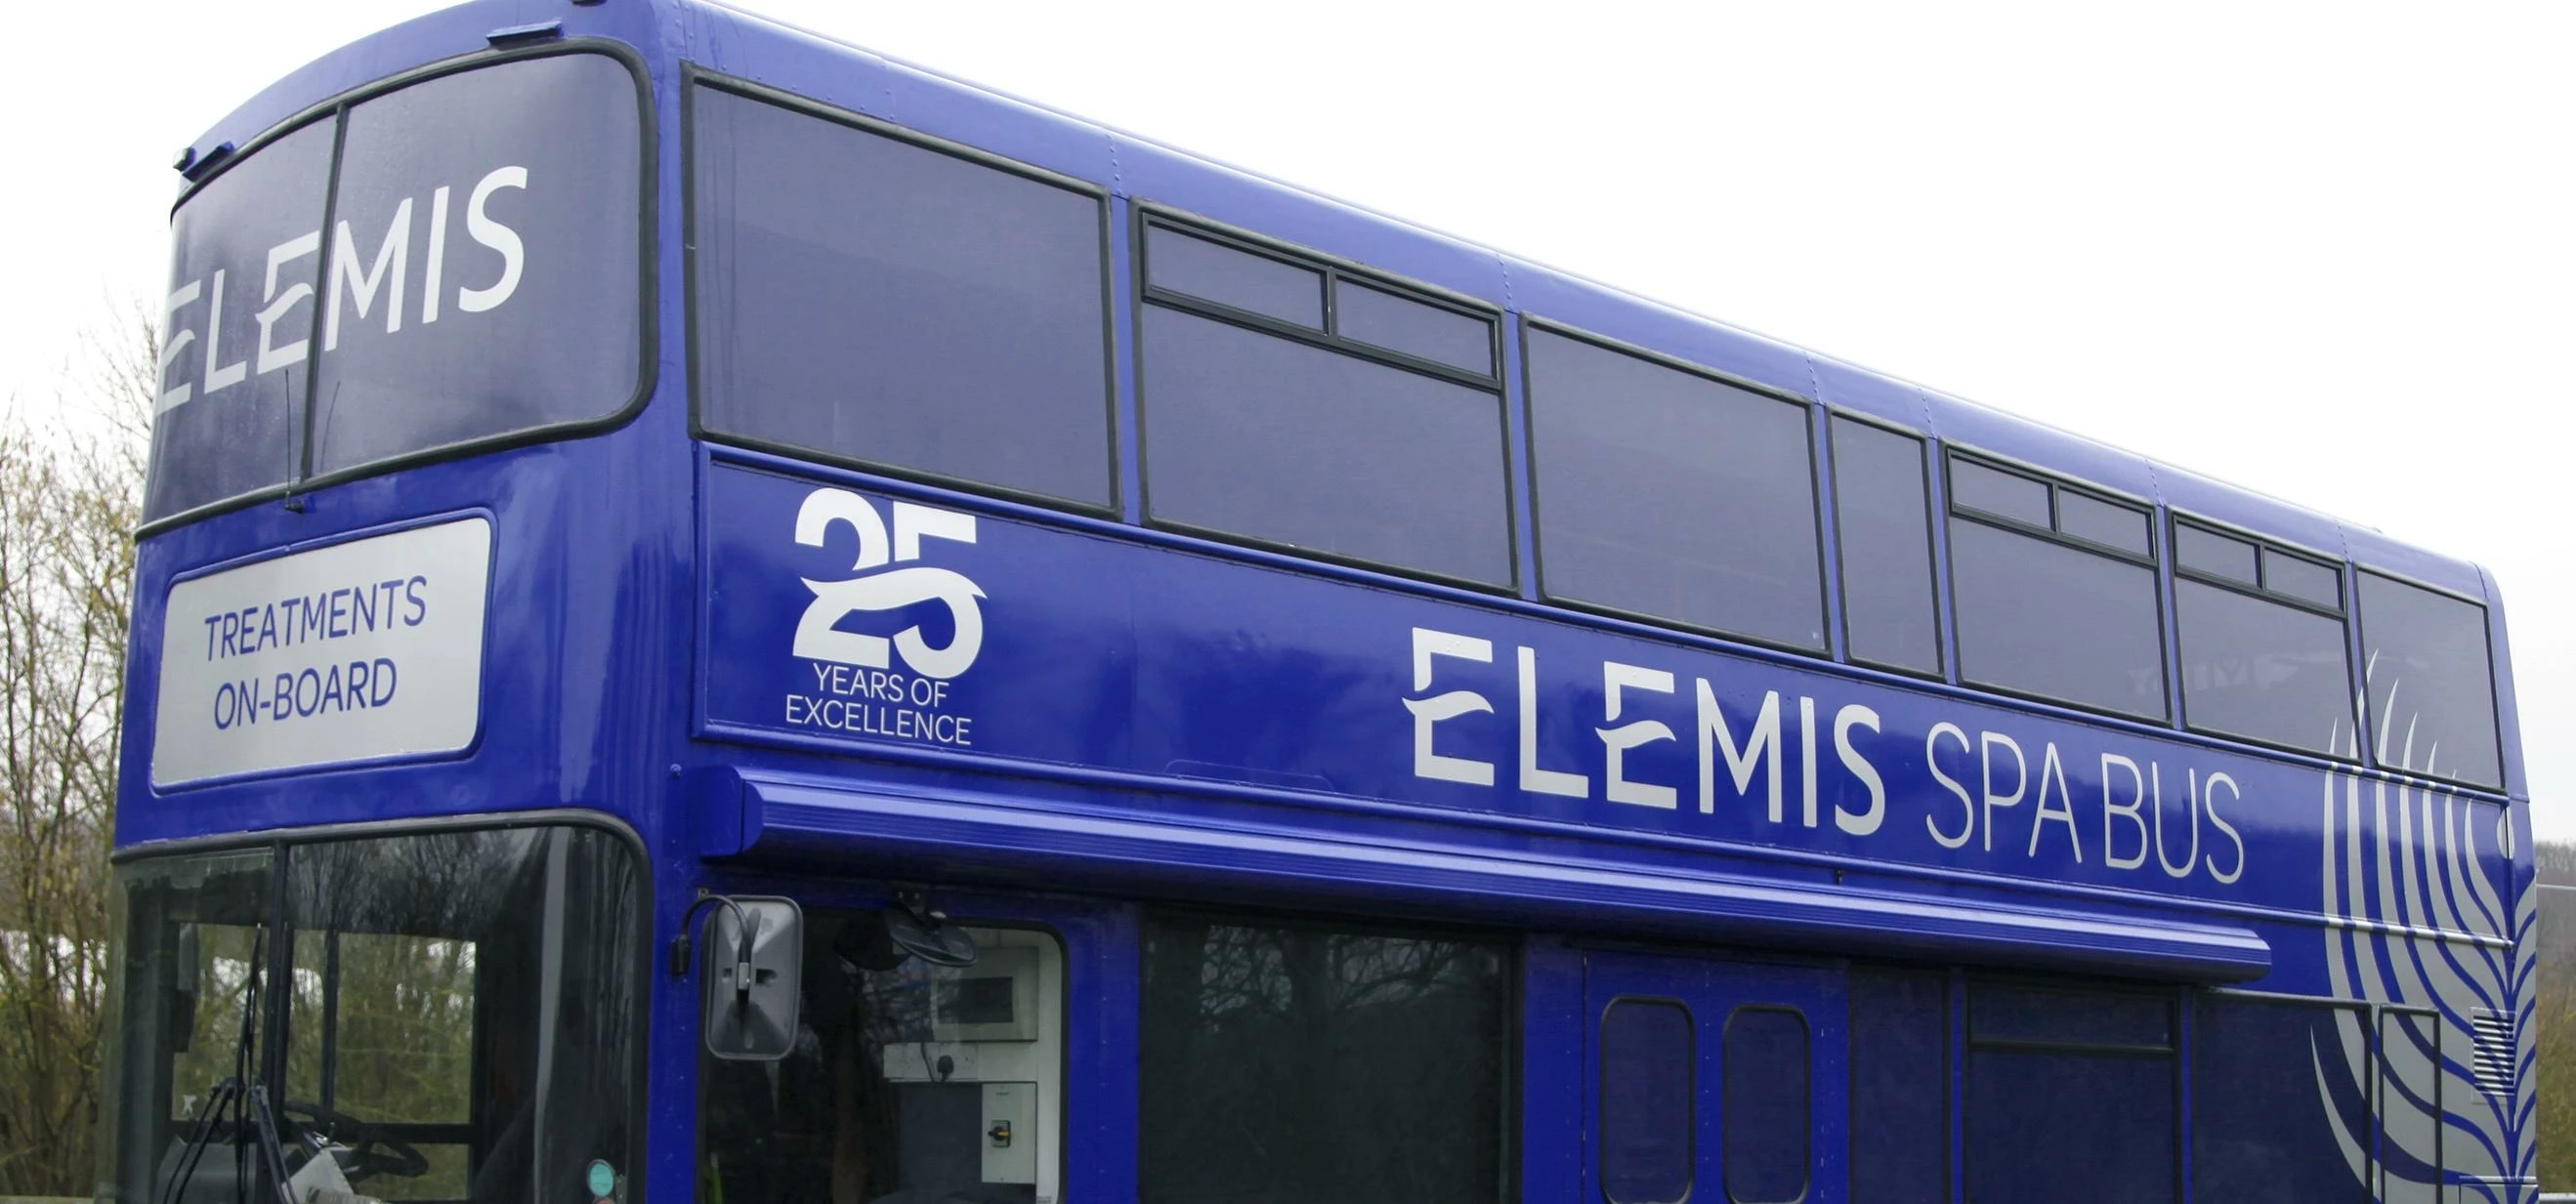 The Elemis Spa Bus